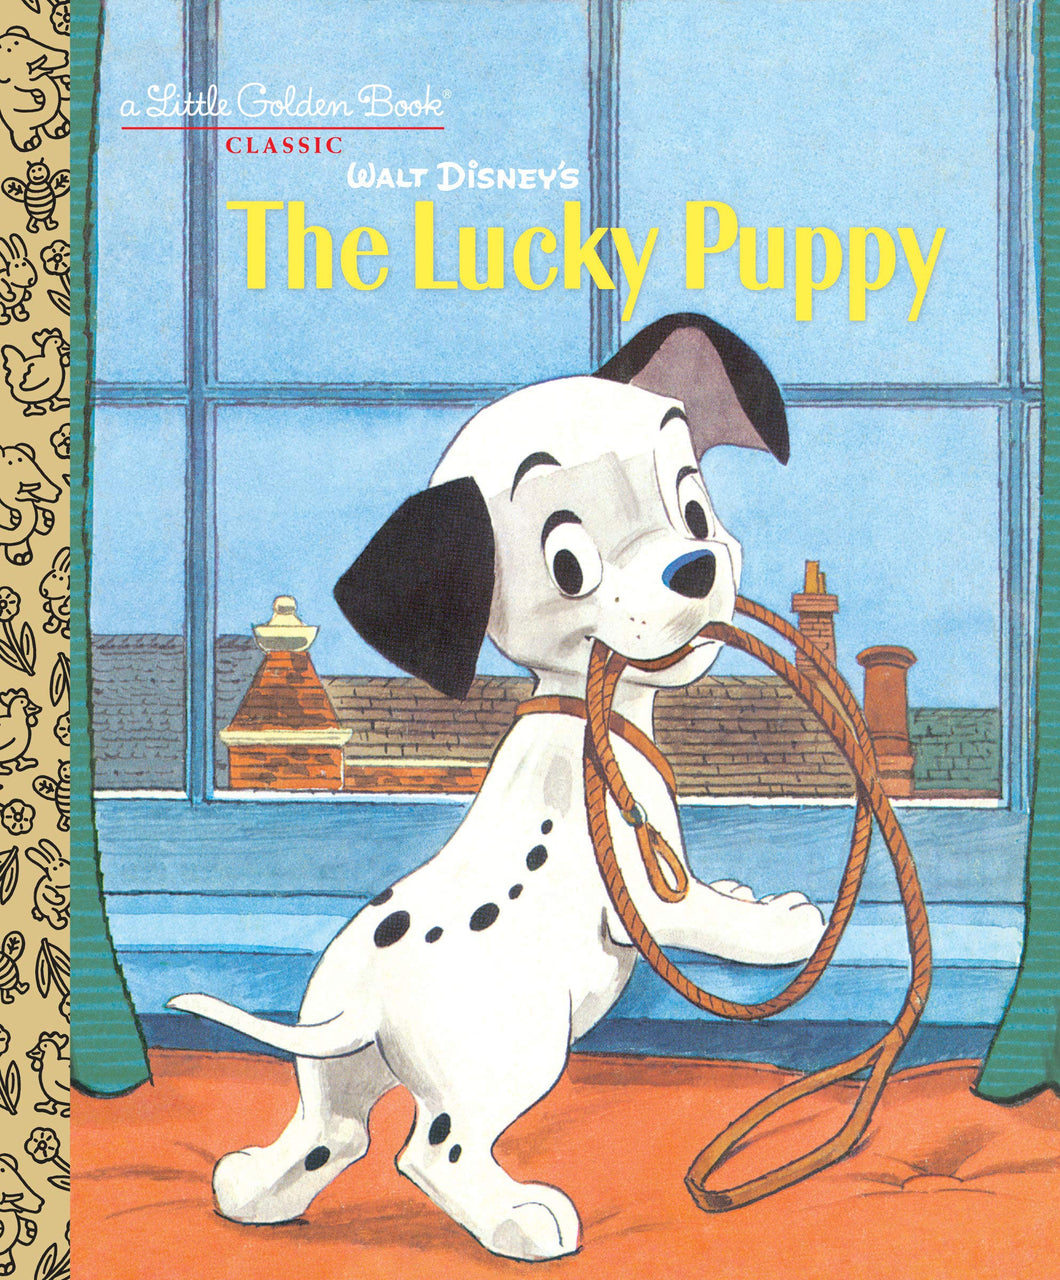 Walt Disney's The Lucky Puppy (Little Golden Books)